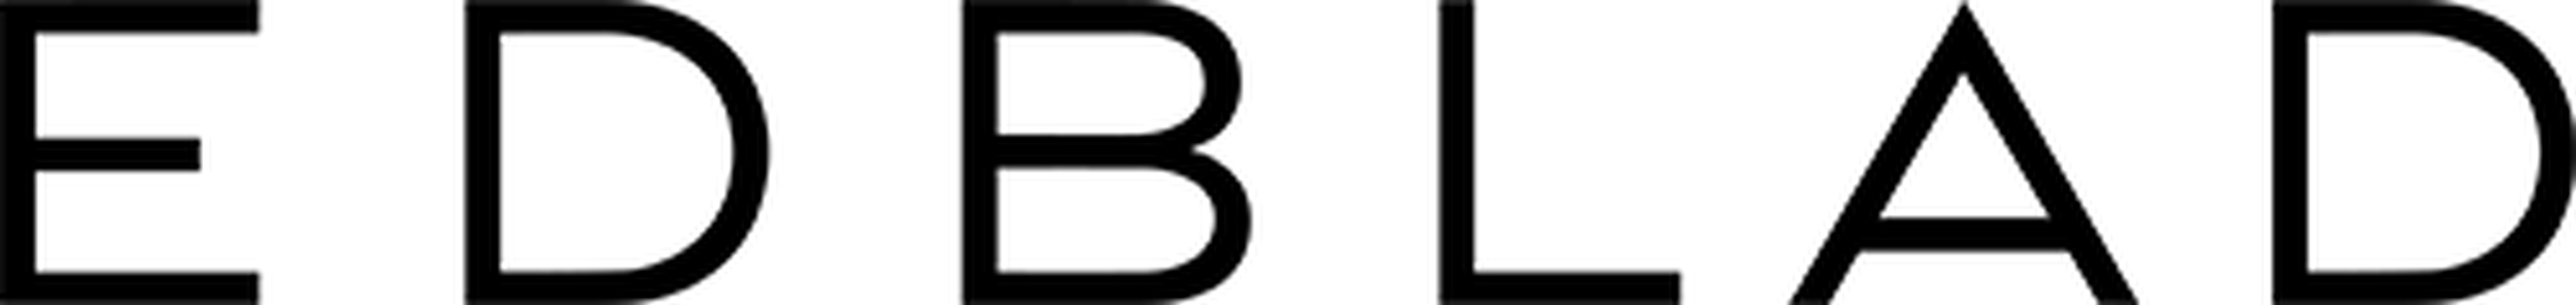 Edblad logotype